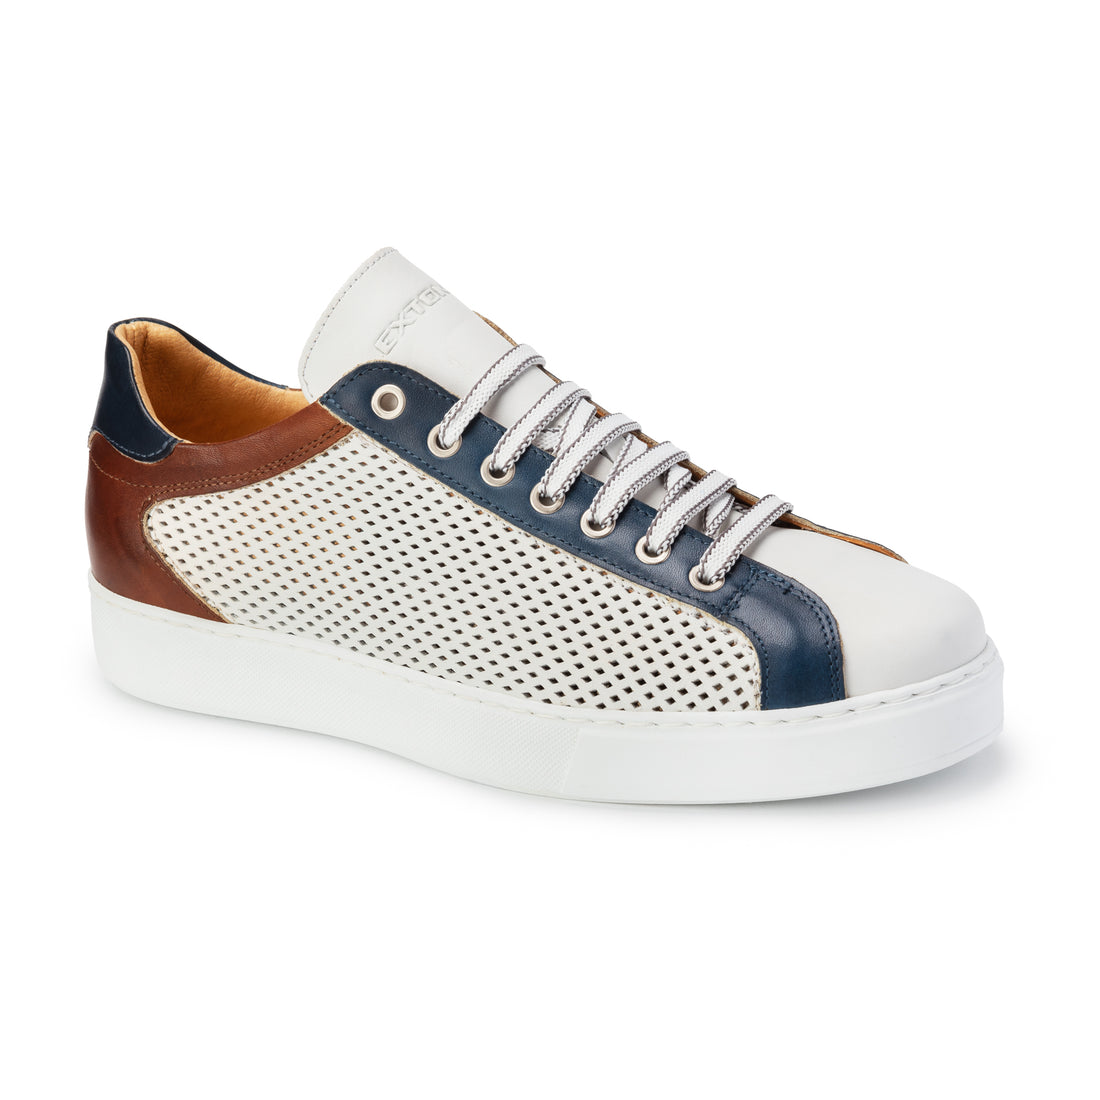 Scarpa Sneakers Uomo Bianco/Blu/Cuoio